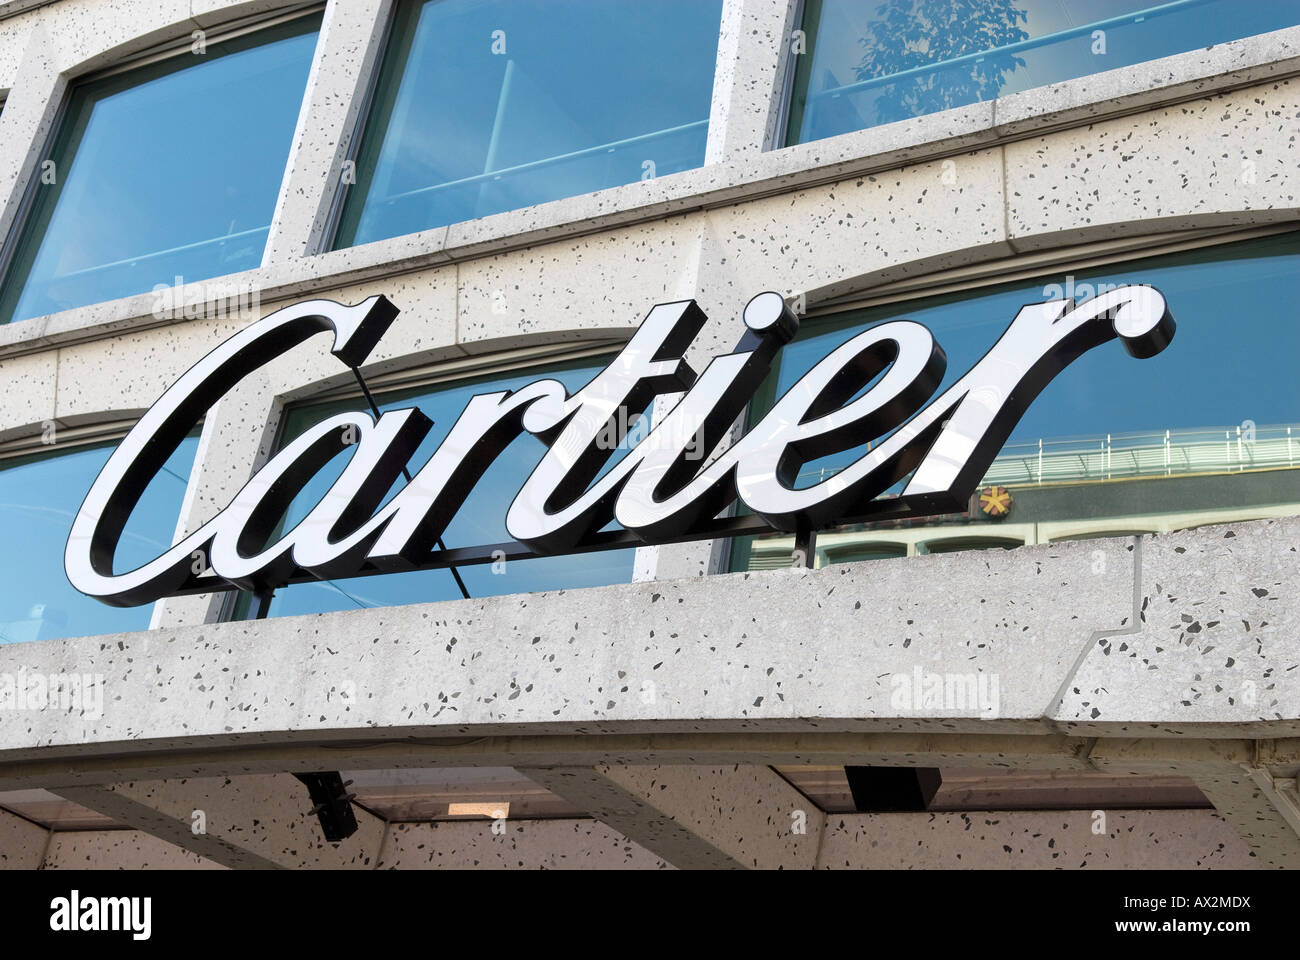 the name cartier